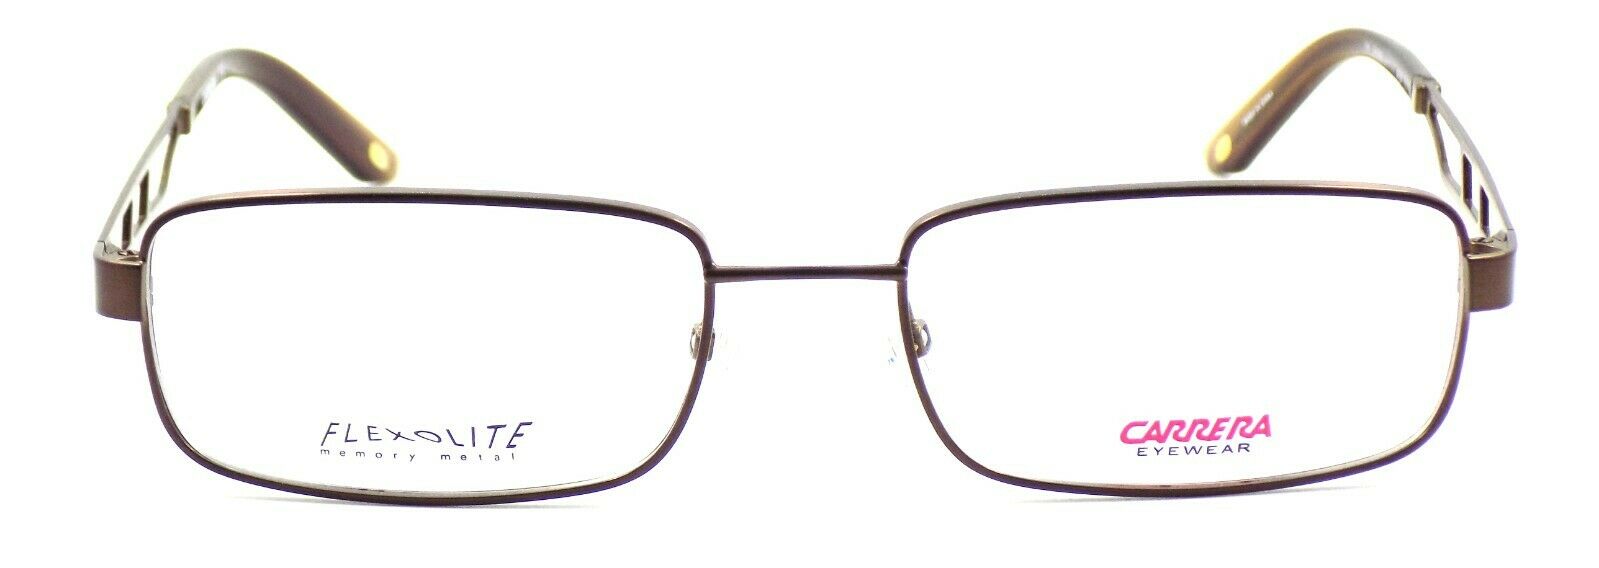 2-Carrera CA7602 FH9 Men's Eyeglasses Frames 54-18-145 Bronze + CASE-716737432440-IKSpecs